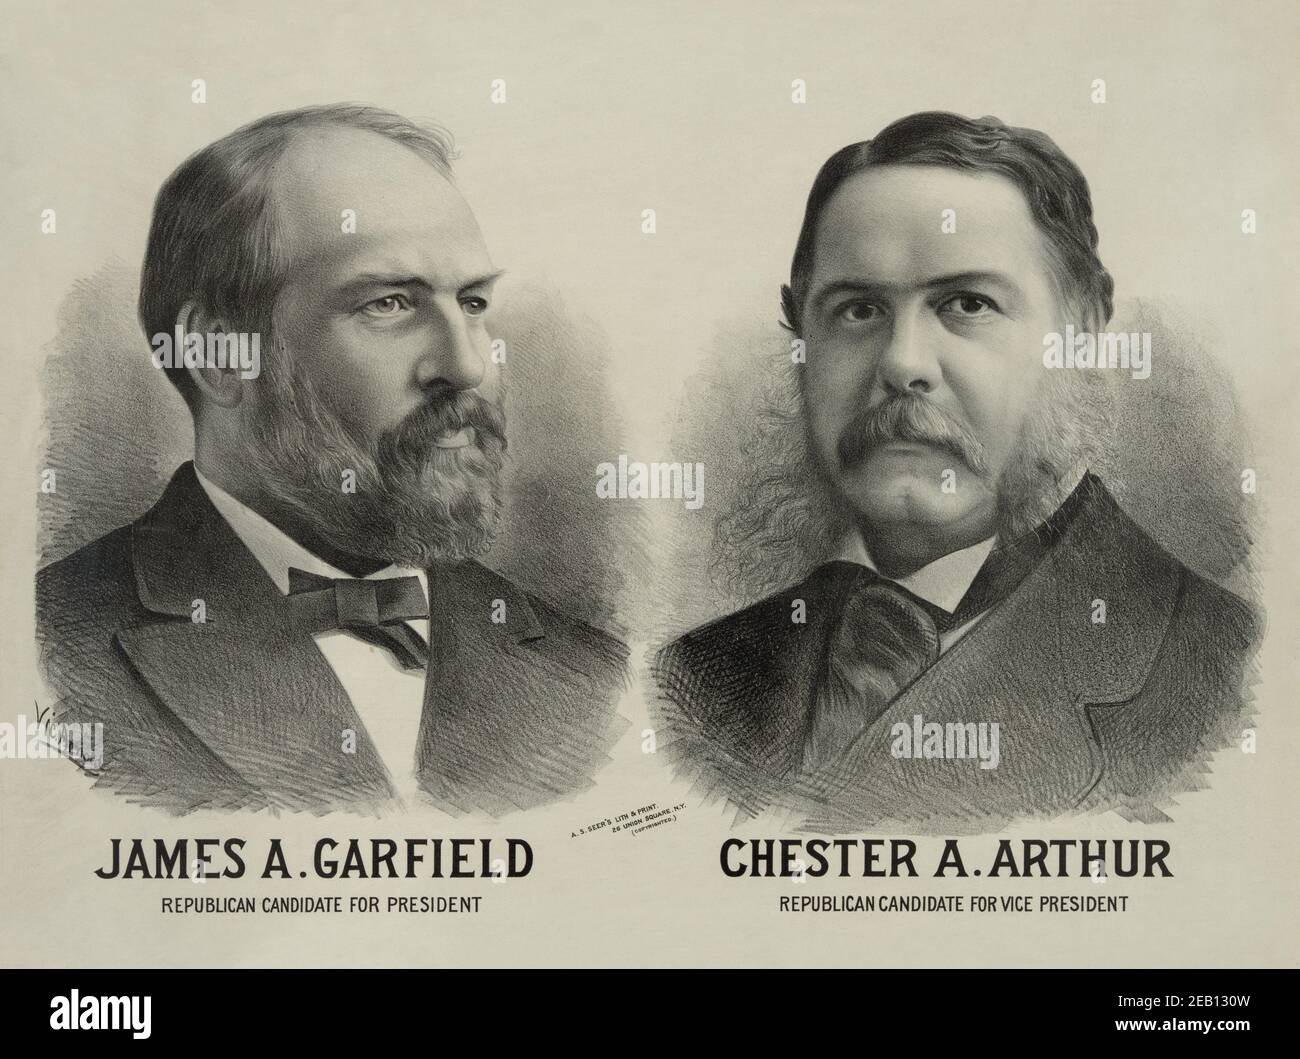 James A. Garfield republikanischer Kandidat für den Präsidenten - Chester A. Arthur republikanischer Kandidat für den Vizepräsidenten 1880 Stockfoto